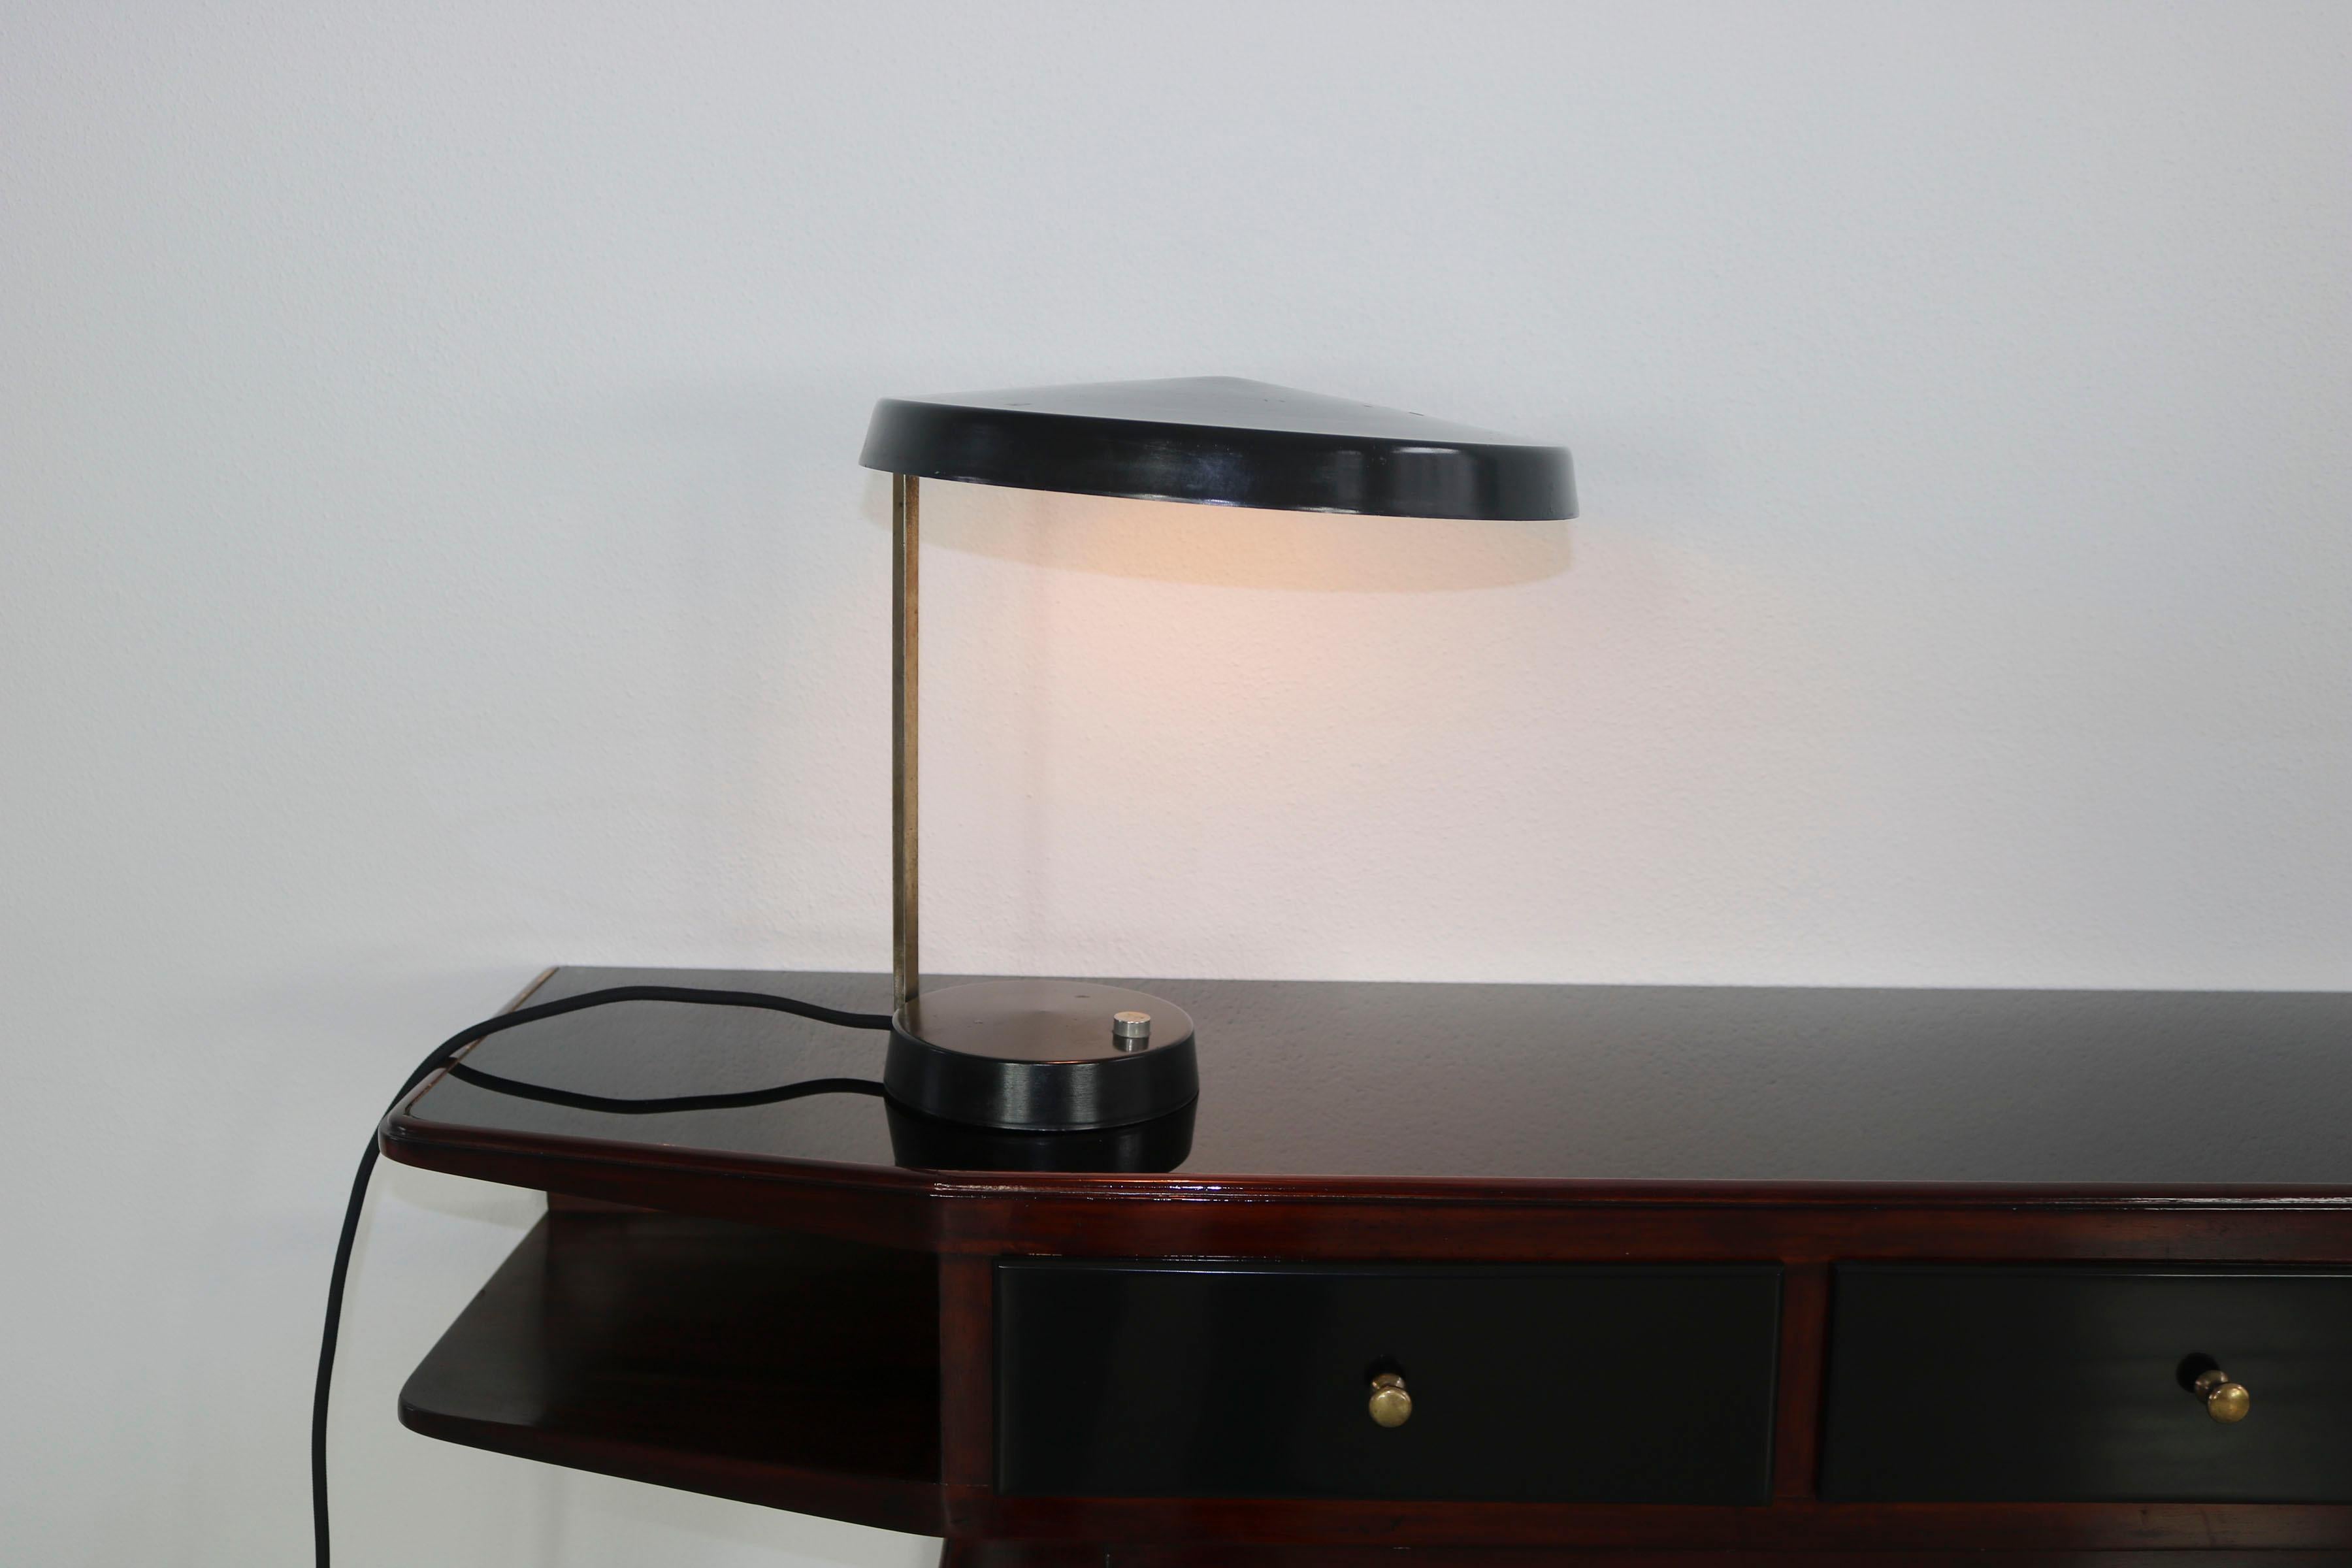 Lampe de table italienne des années 1950 en laiton et aluminium laqué noir avec abat-jour. L'écran peut être tourné sur le côté. La lampe est nouvellement électrifiée.